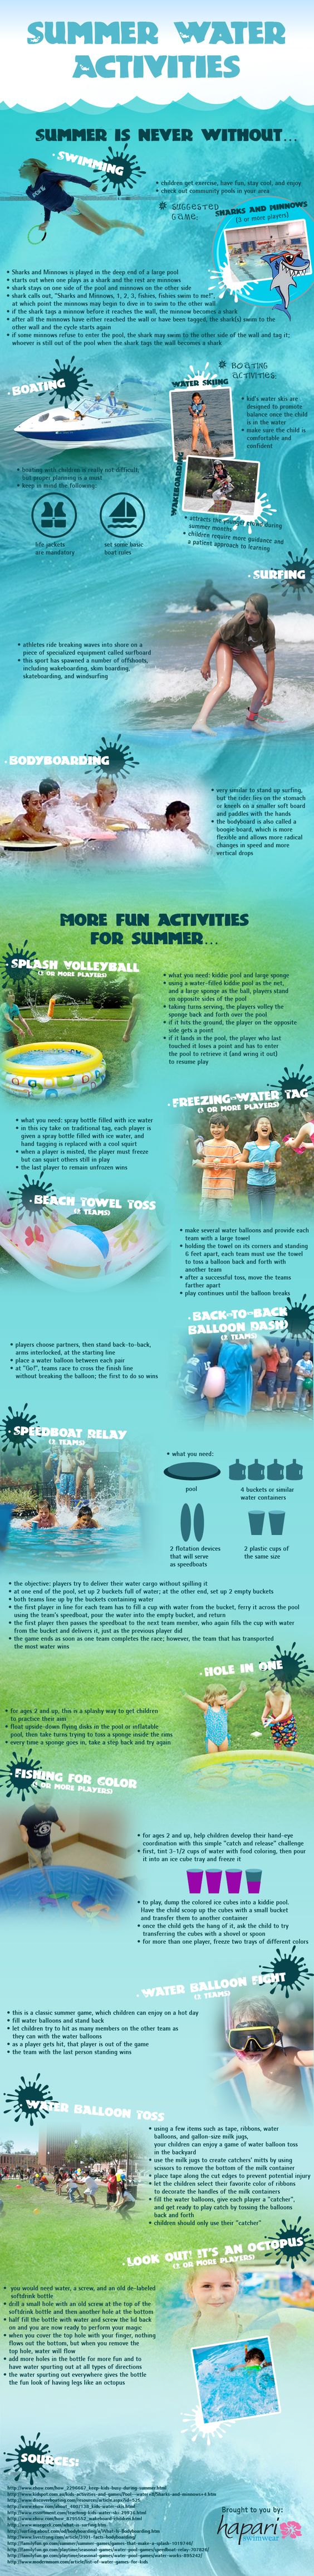 Summer Water Activities Infographic 